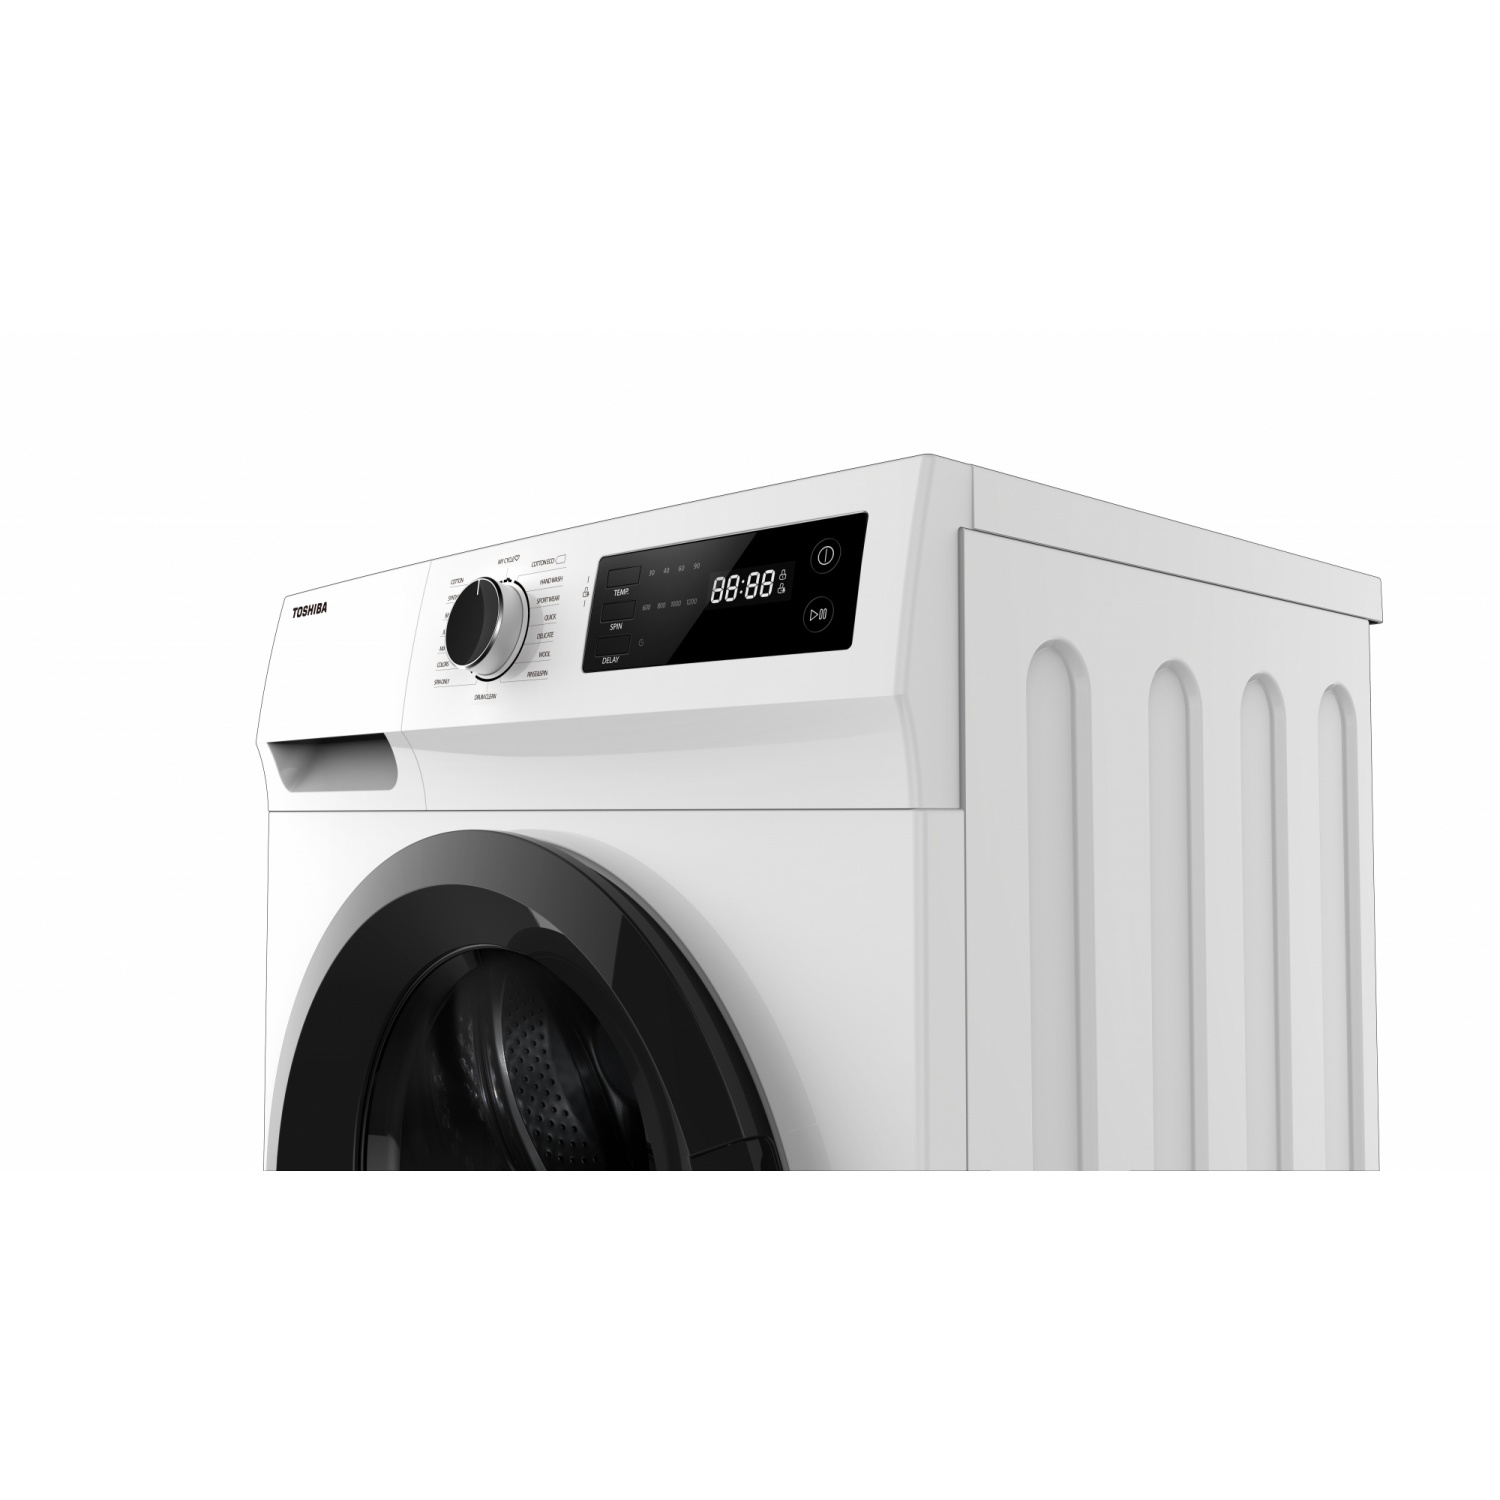 TOSHIBA เครื่องซักผ้าฝาหน้า 8.5 KG. TW-BH95S2T สีขาว